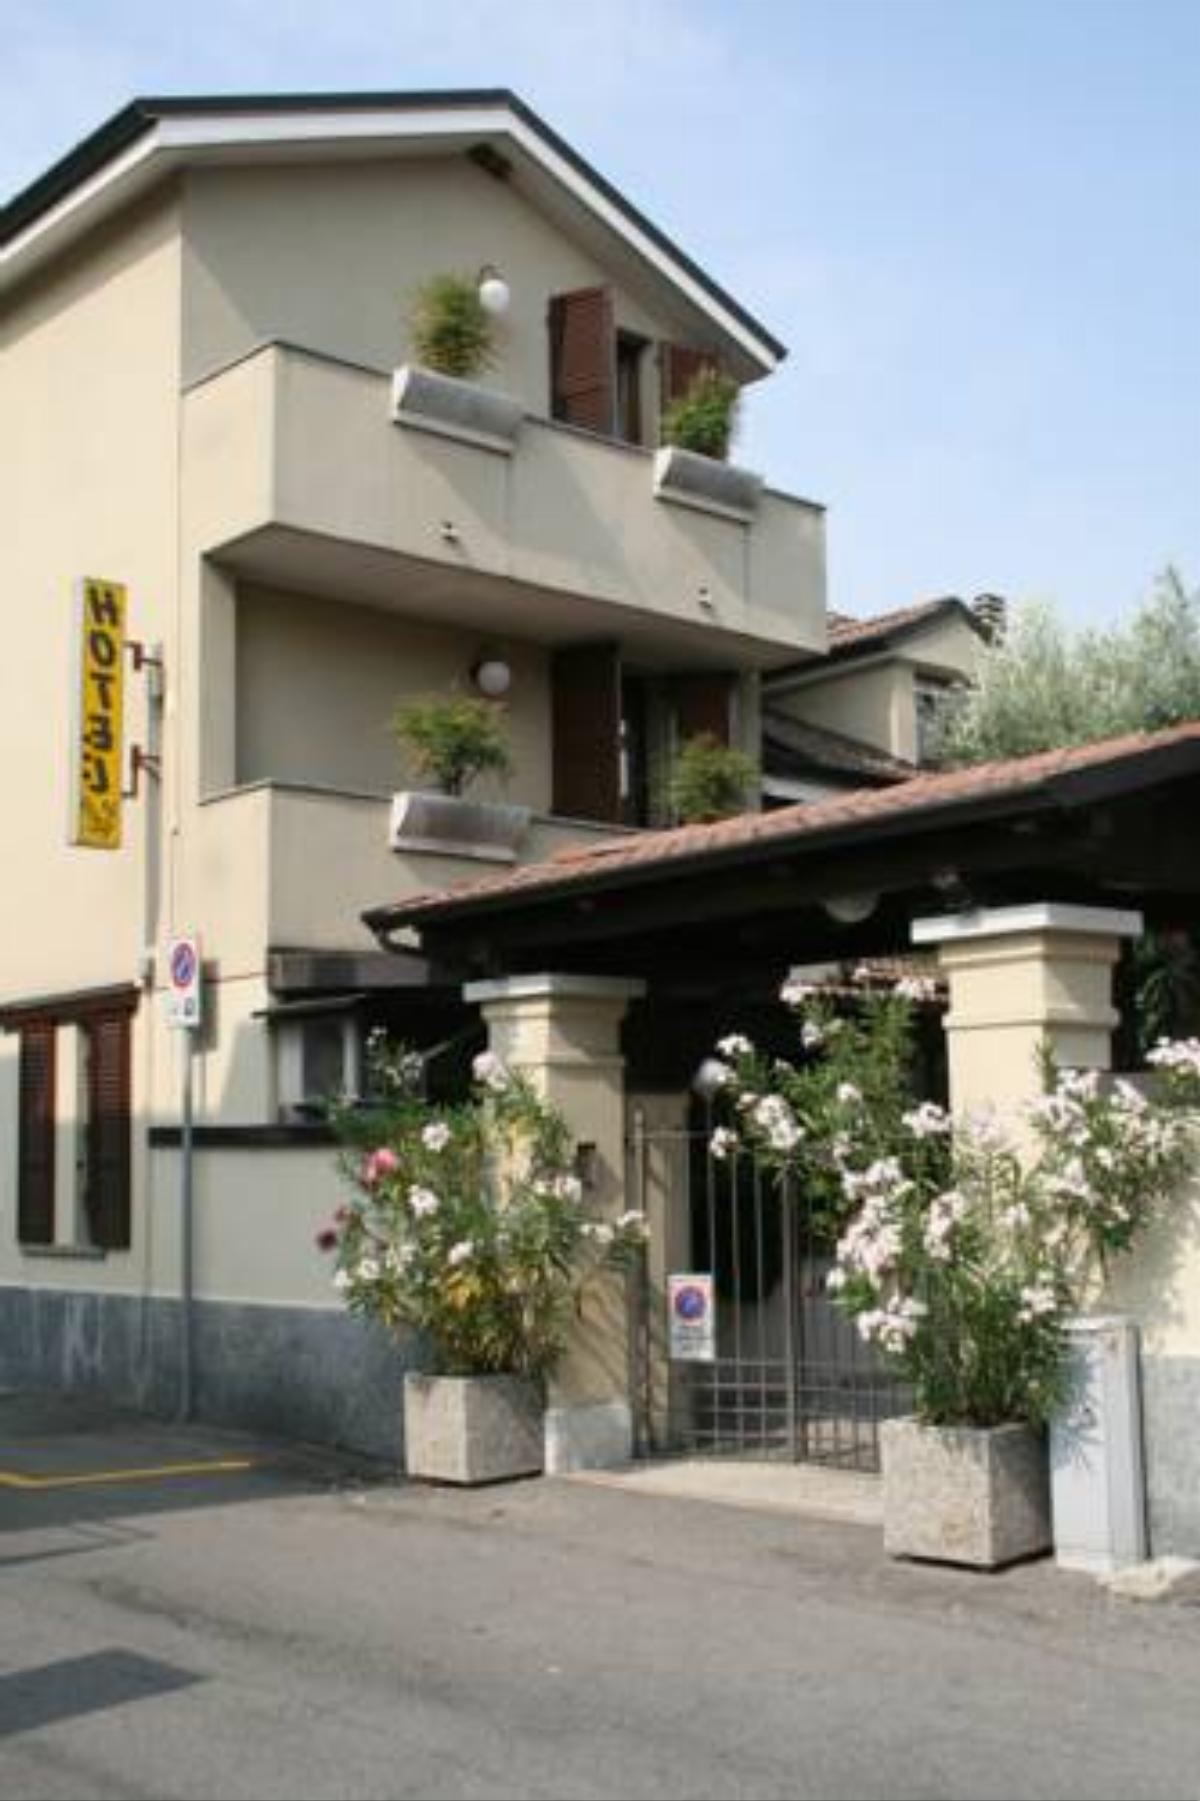 Hotel Rocco Hotel Carugate Italy